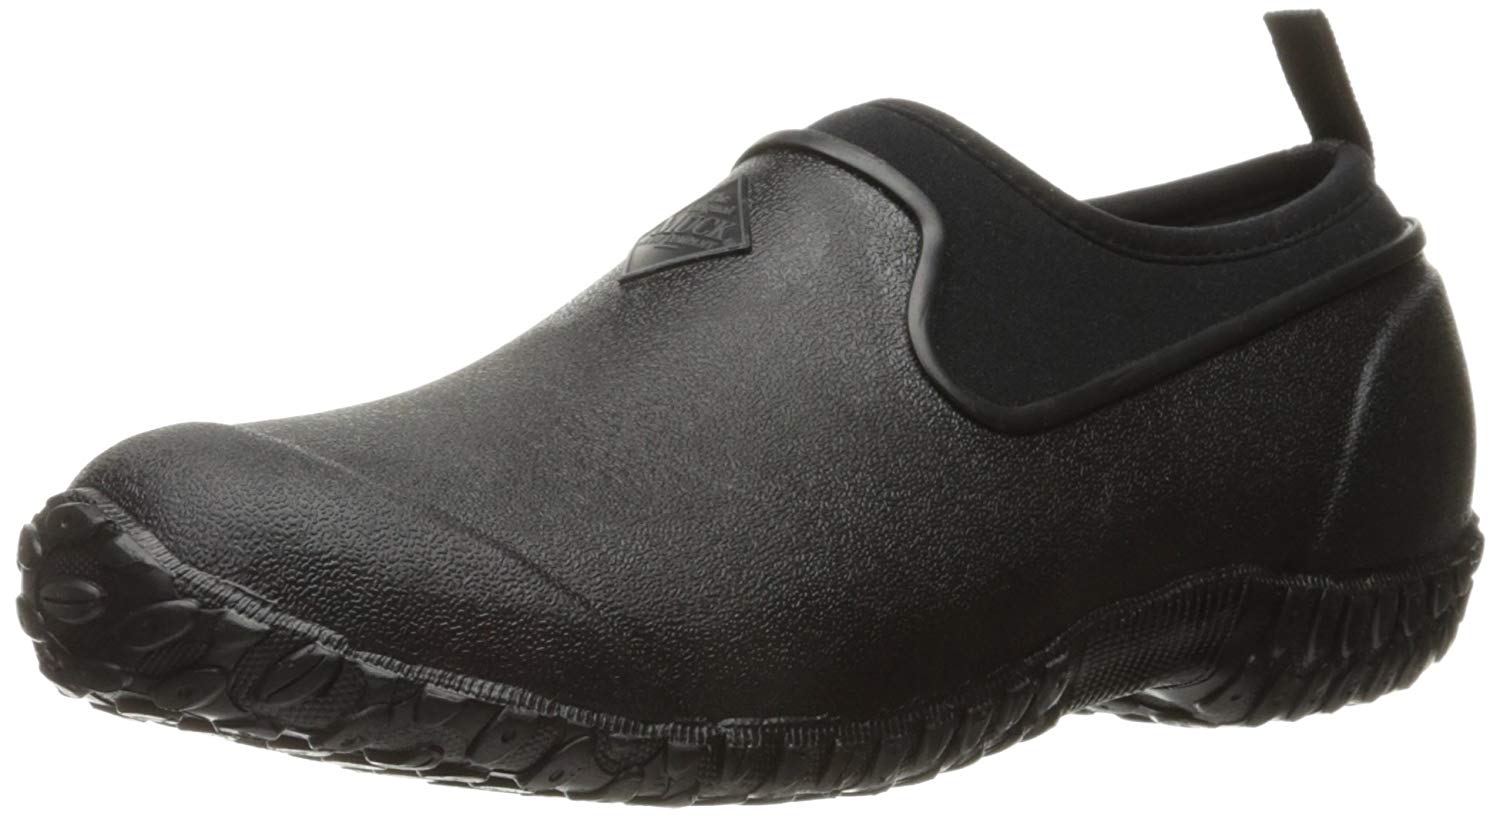 Muck Boots Muckster Ll Women's Rubber Garden Shoes, Black, Size 10.0 ...